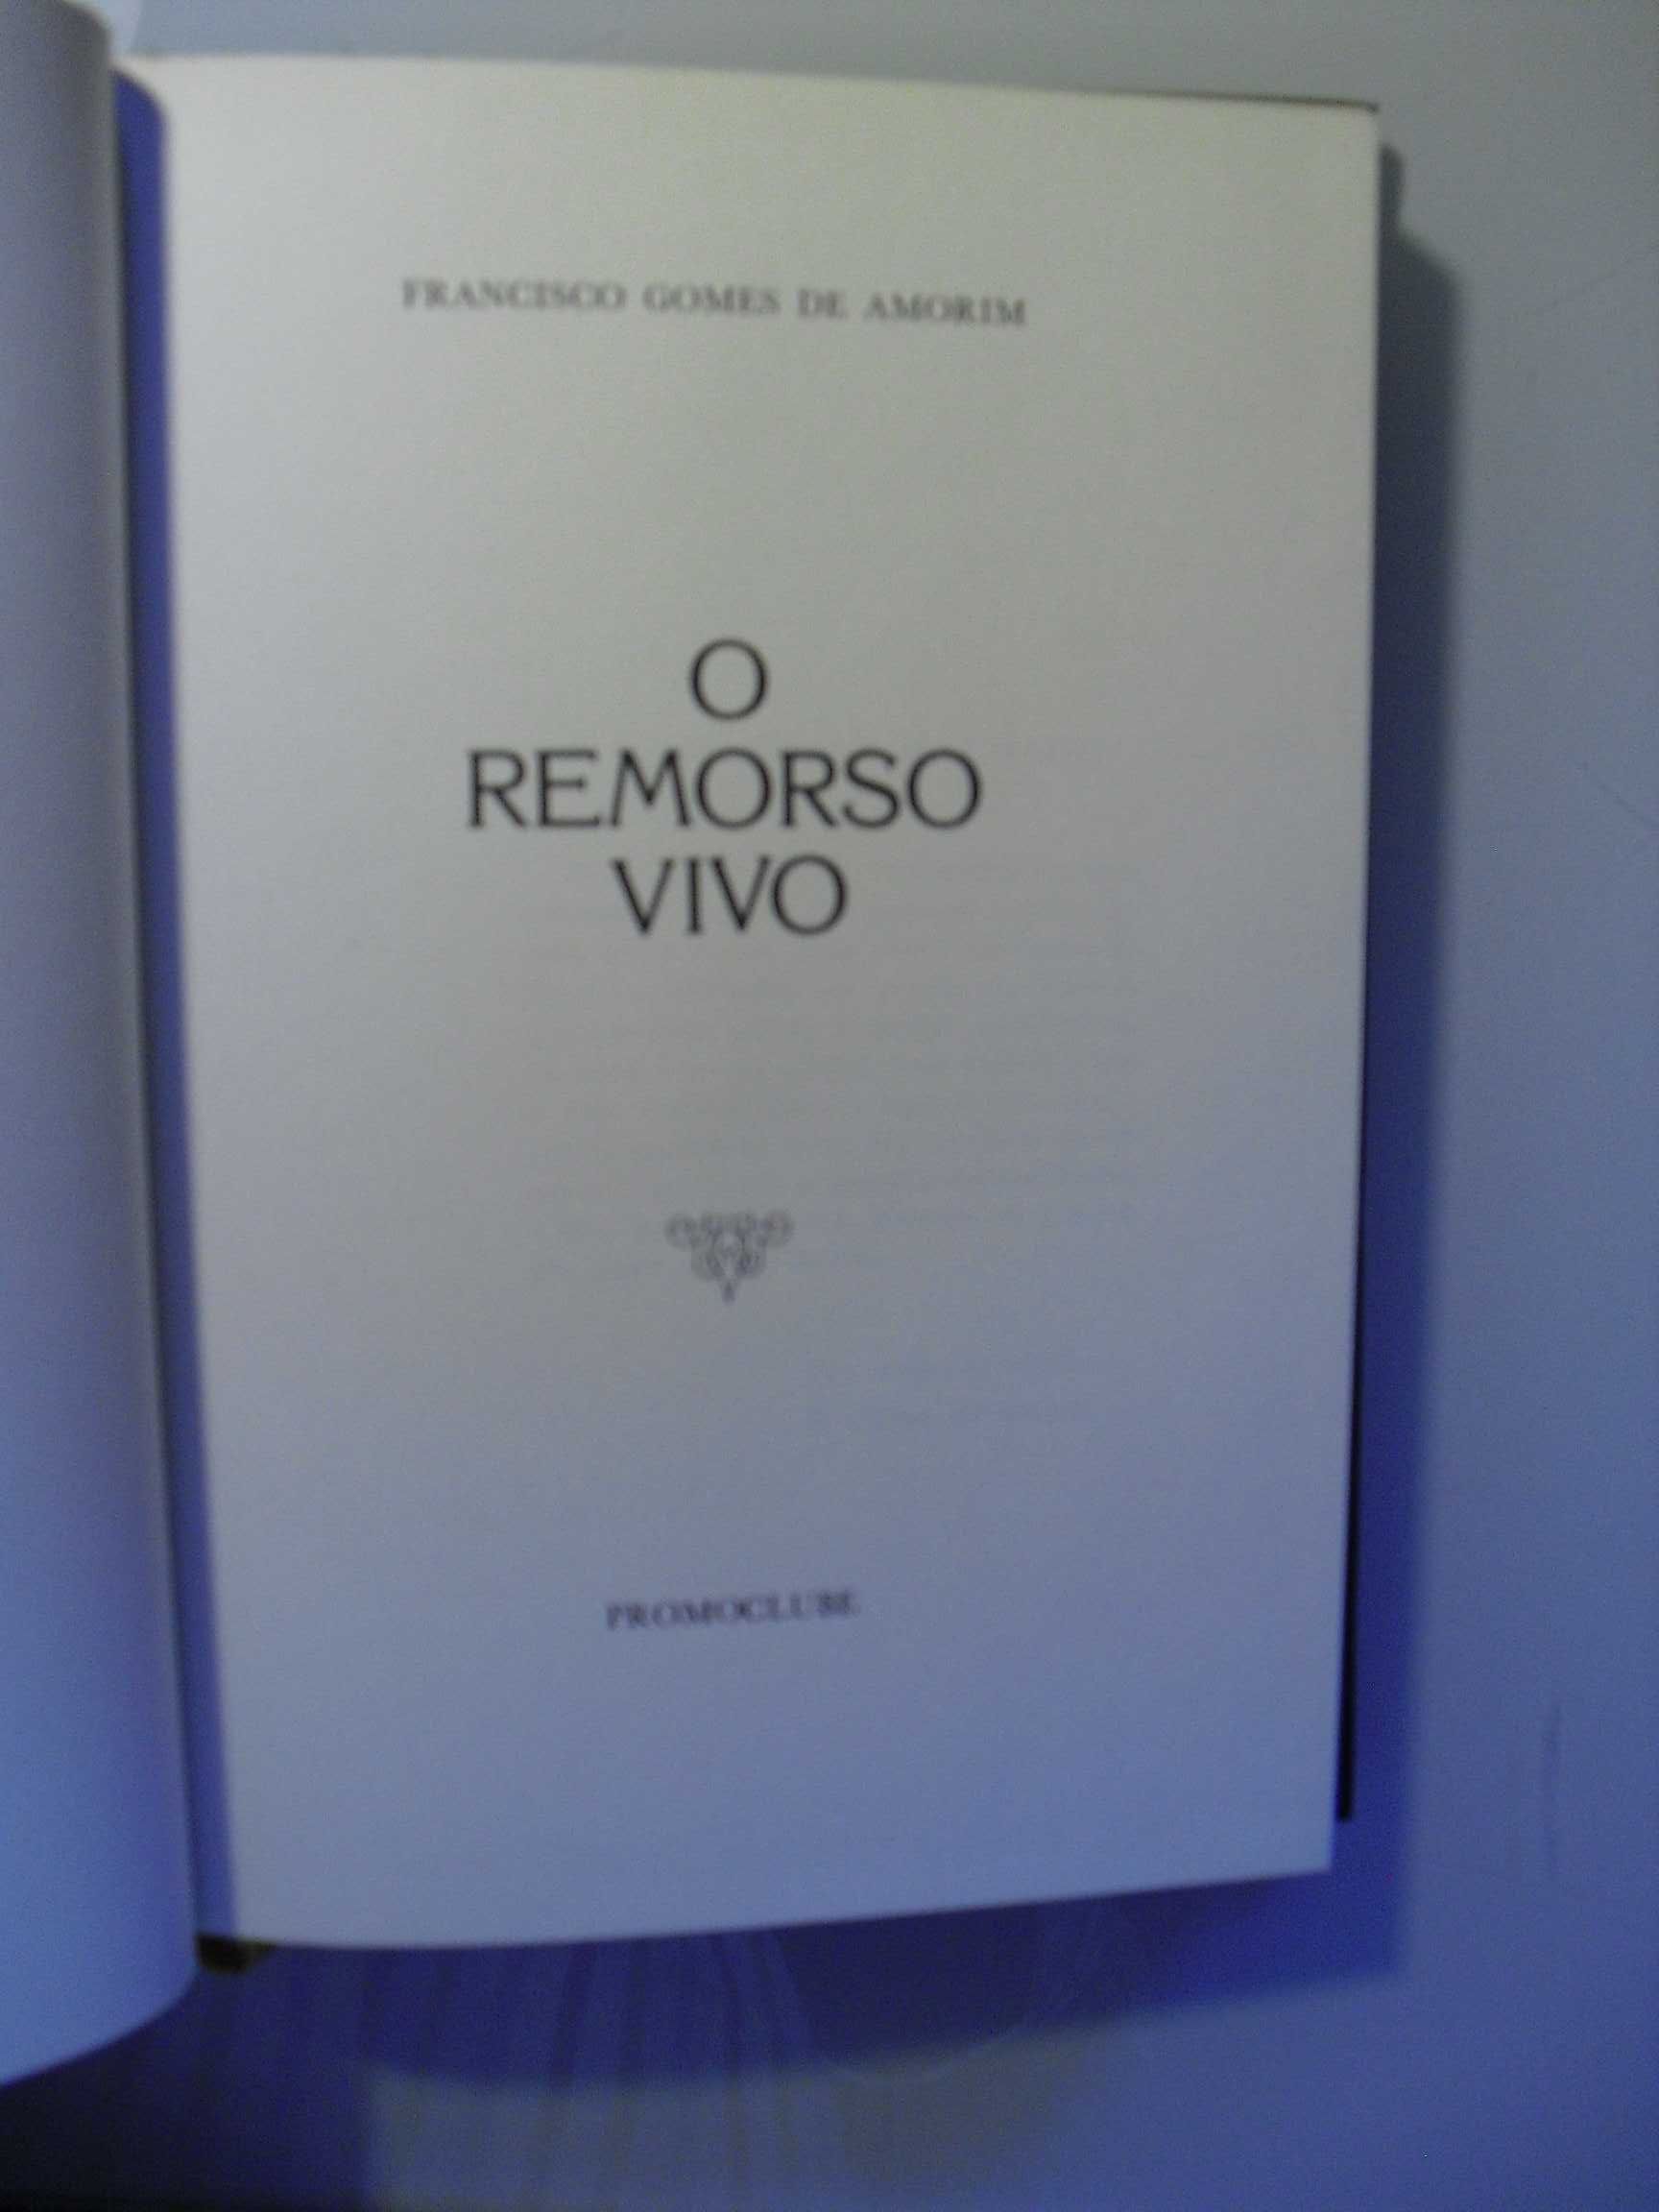 Amorim (Francisco Gomes de);O Remorso Vivo;